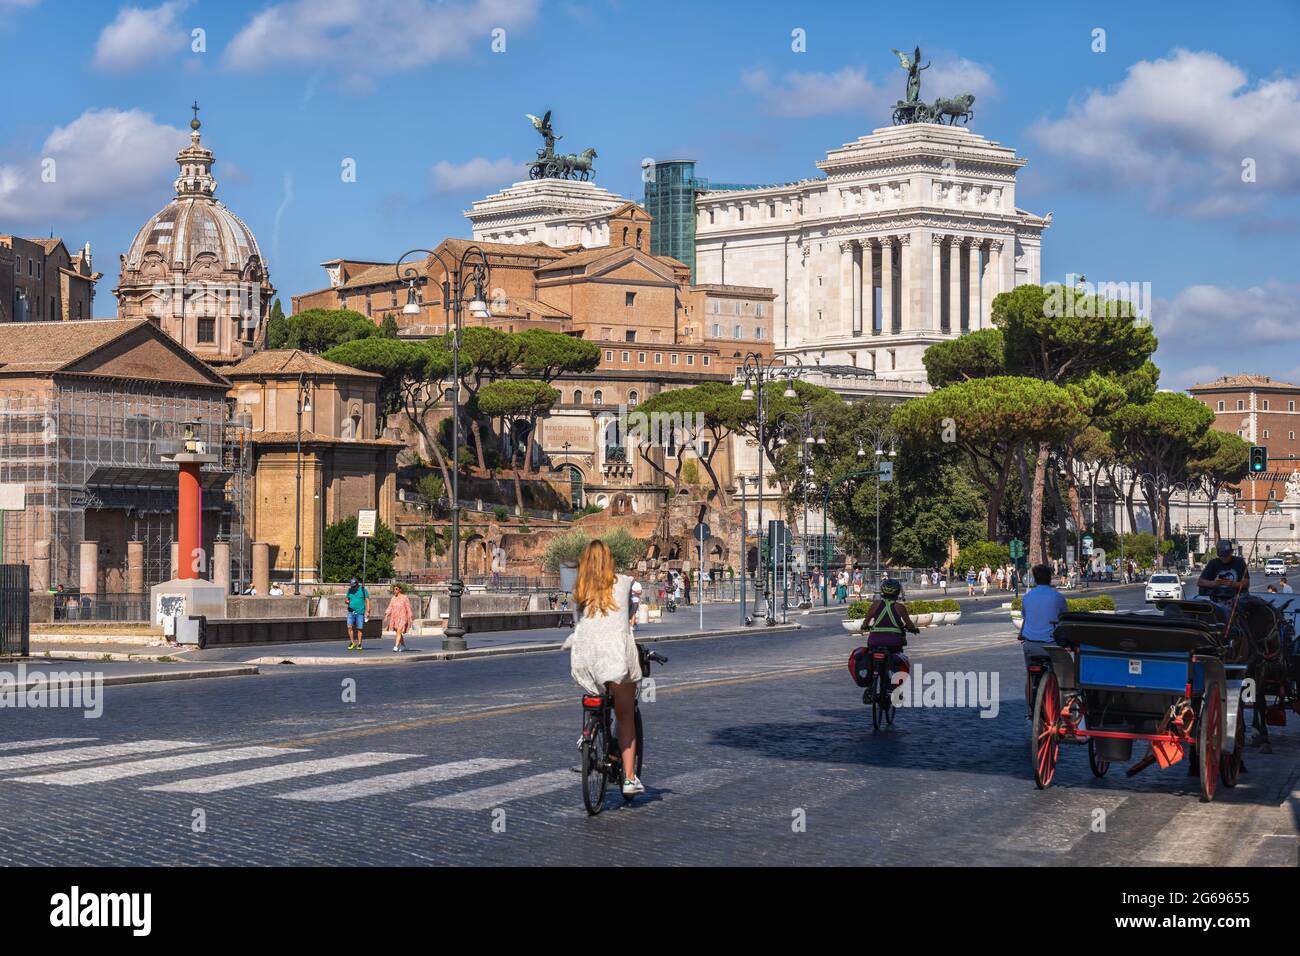 Rom, Latium, Italien - 27. August 2020: Menschen in der Via dei Fori Imperiali Straße und Altar des Vaterlandes im historischen Stadtzentrum. Stockfoto